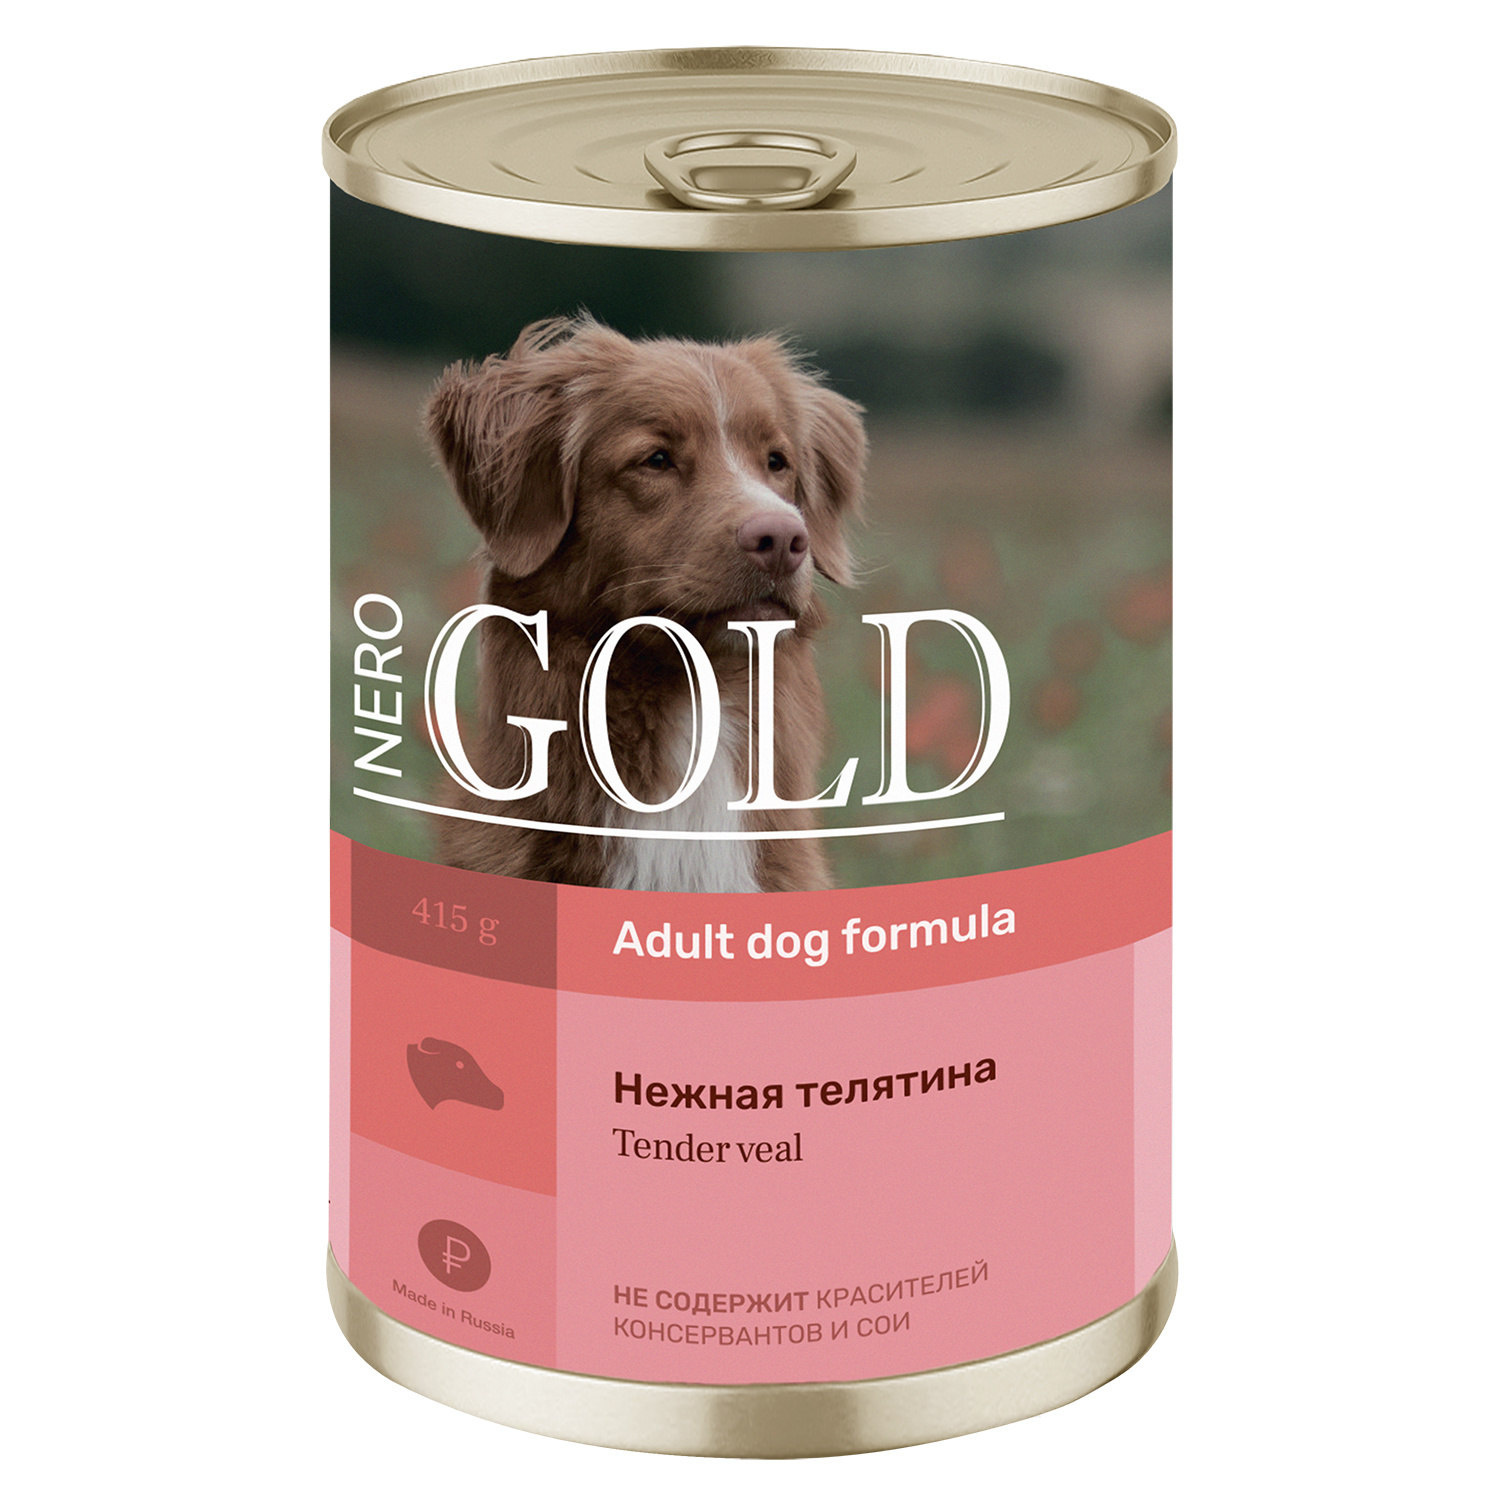 Nero Gold консервы Nero Gold консервы консервы для собак Нежная телятина (415 г)